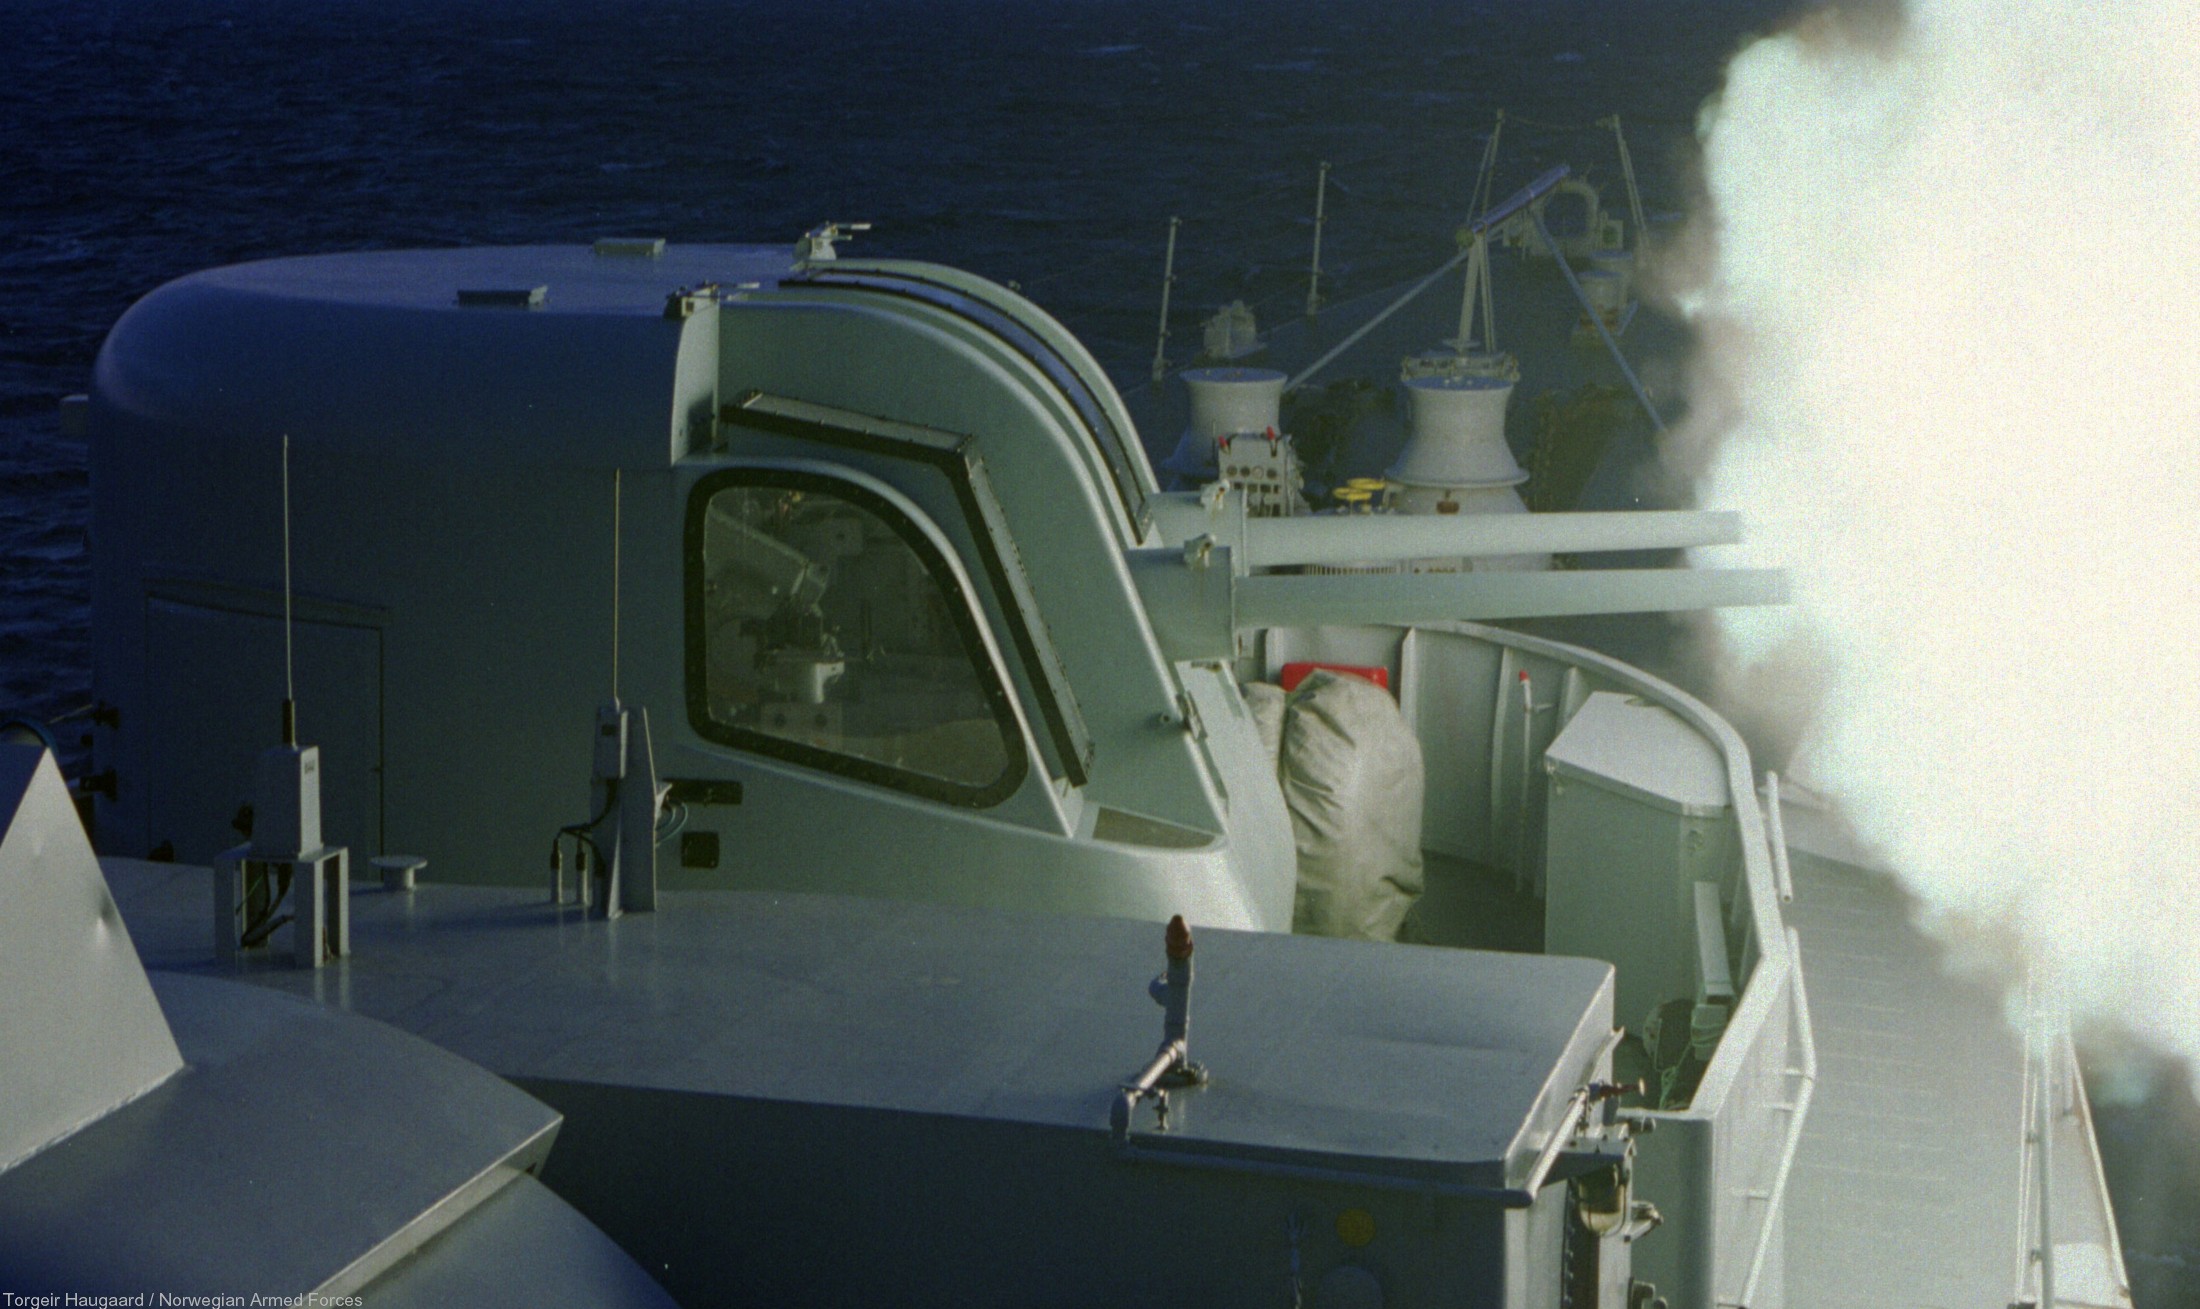 f-303 hnoms stavanger knm oslo class frigate royal norwegian navy sjoforsvaret 12 76mm gun